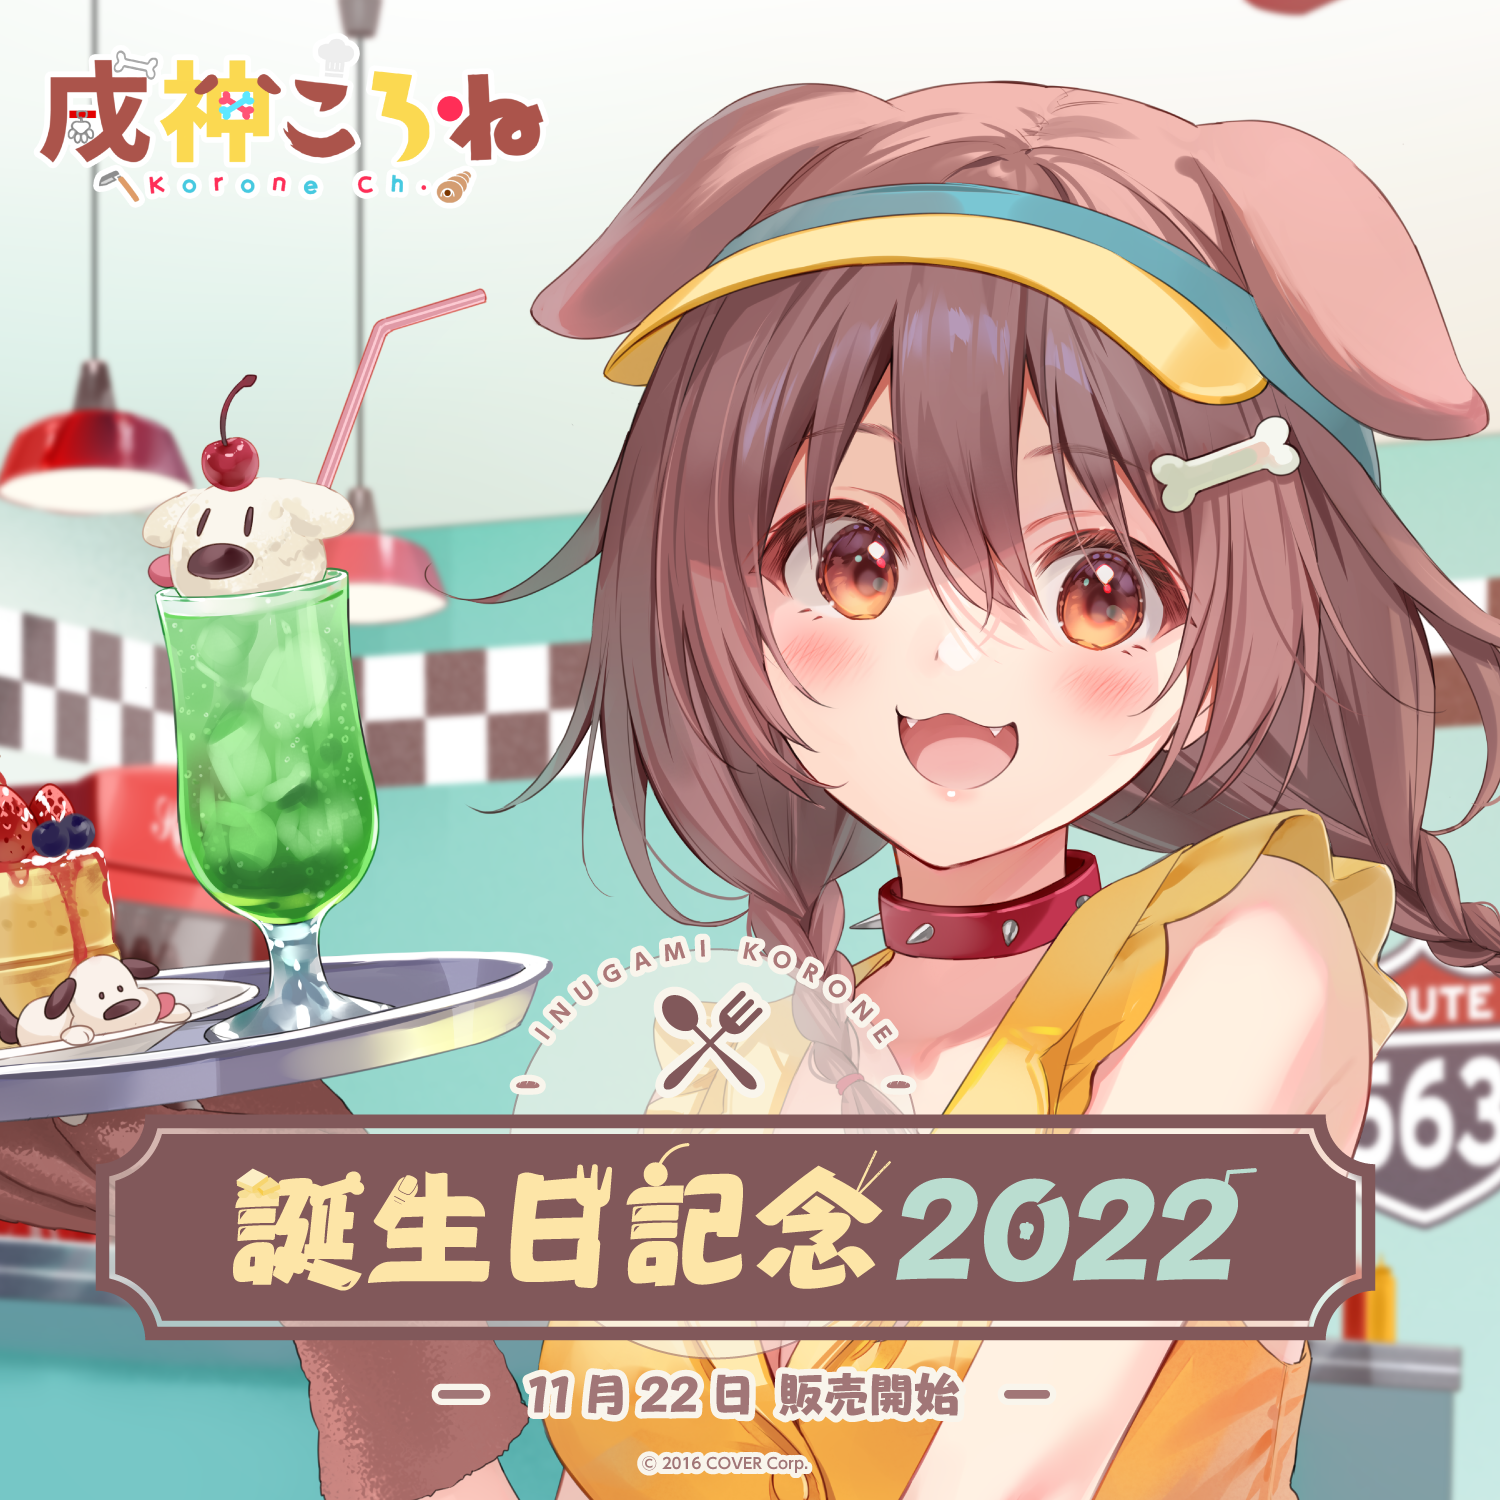 戌神ころね誕生日記念2022 – hololive production official shop